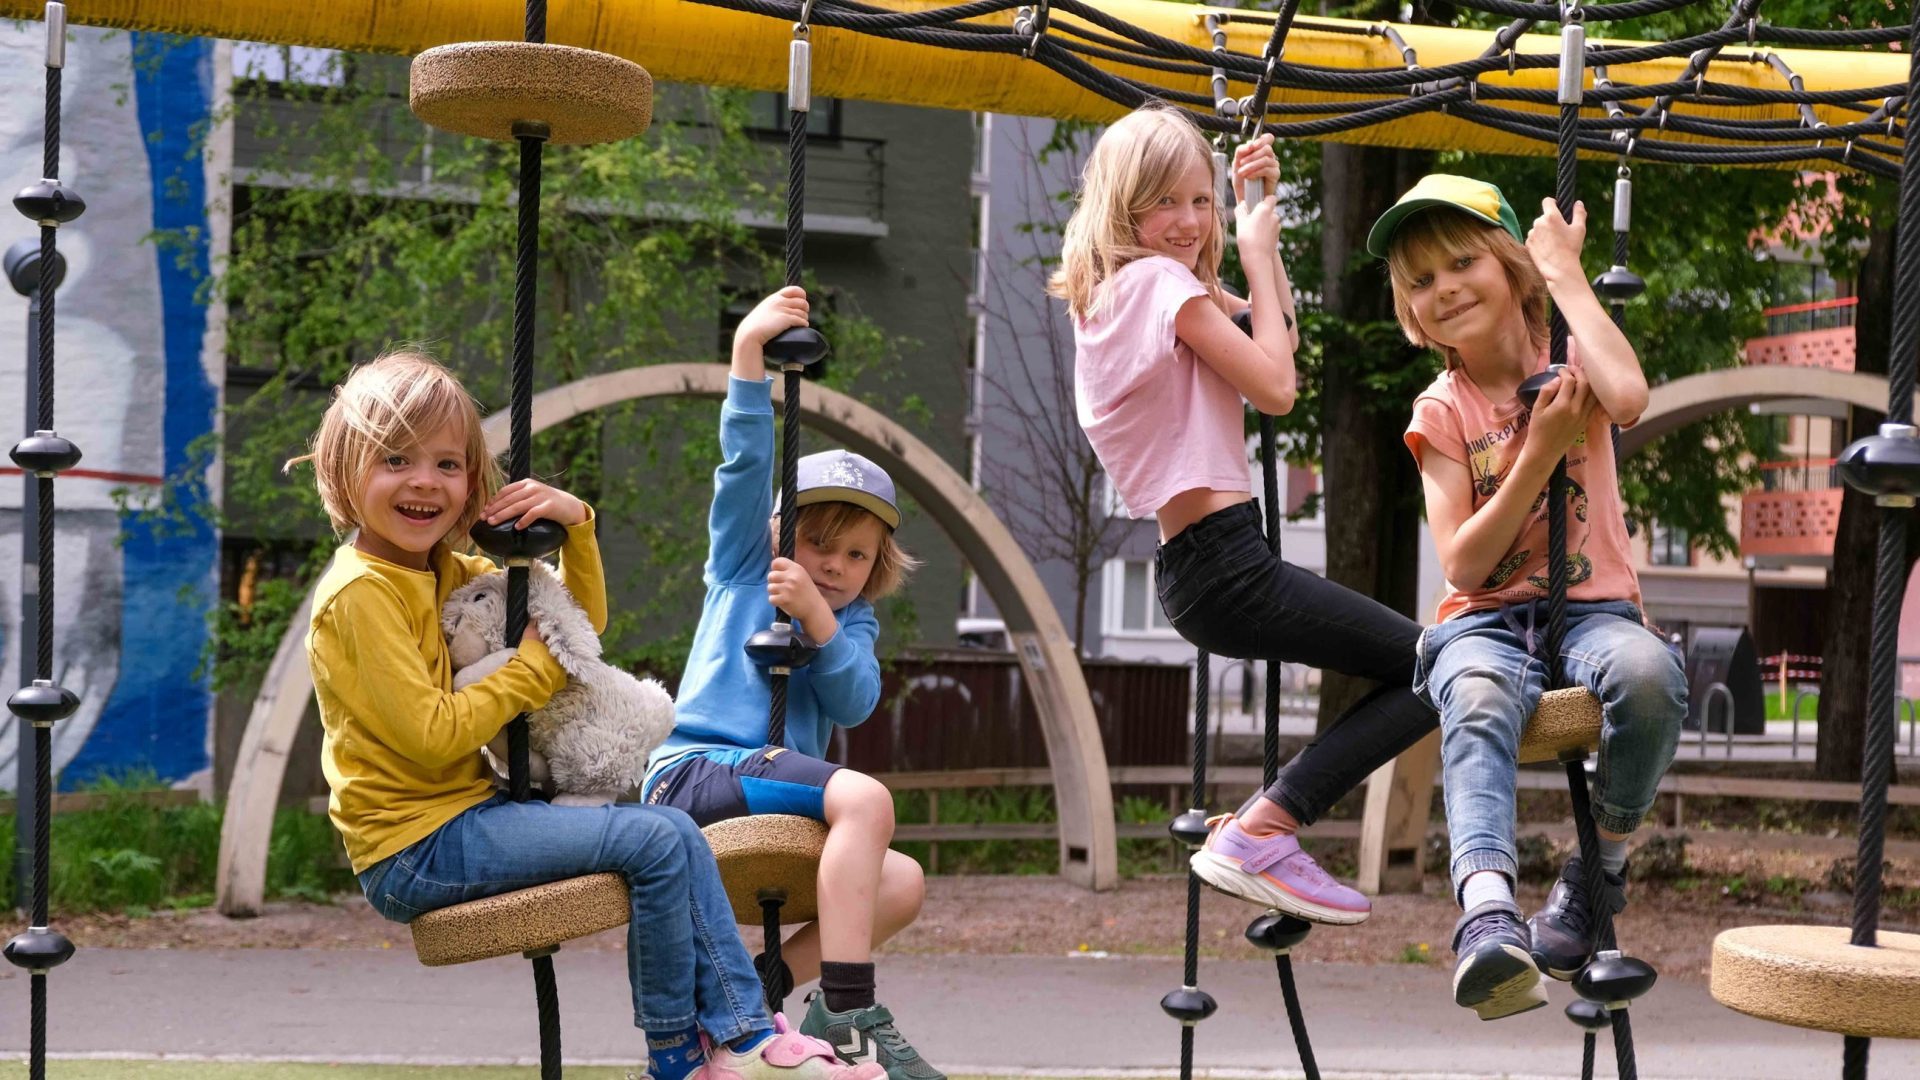 De fire barna henger i en lekestativhuske hver og smiler til kameraet.